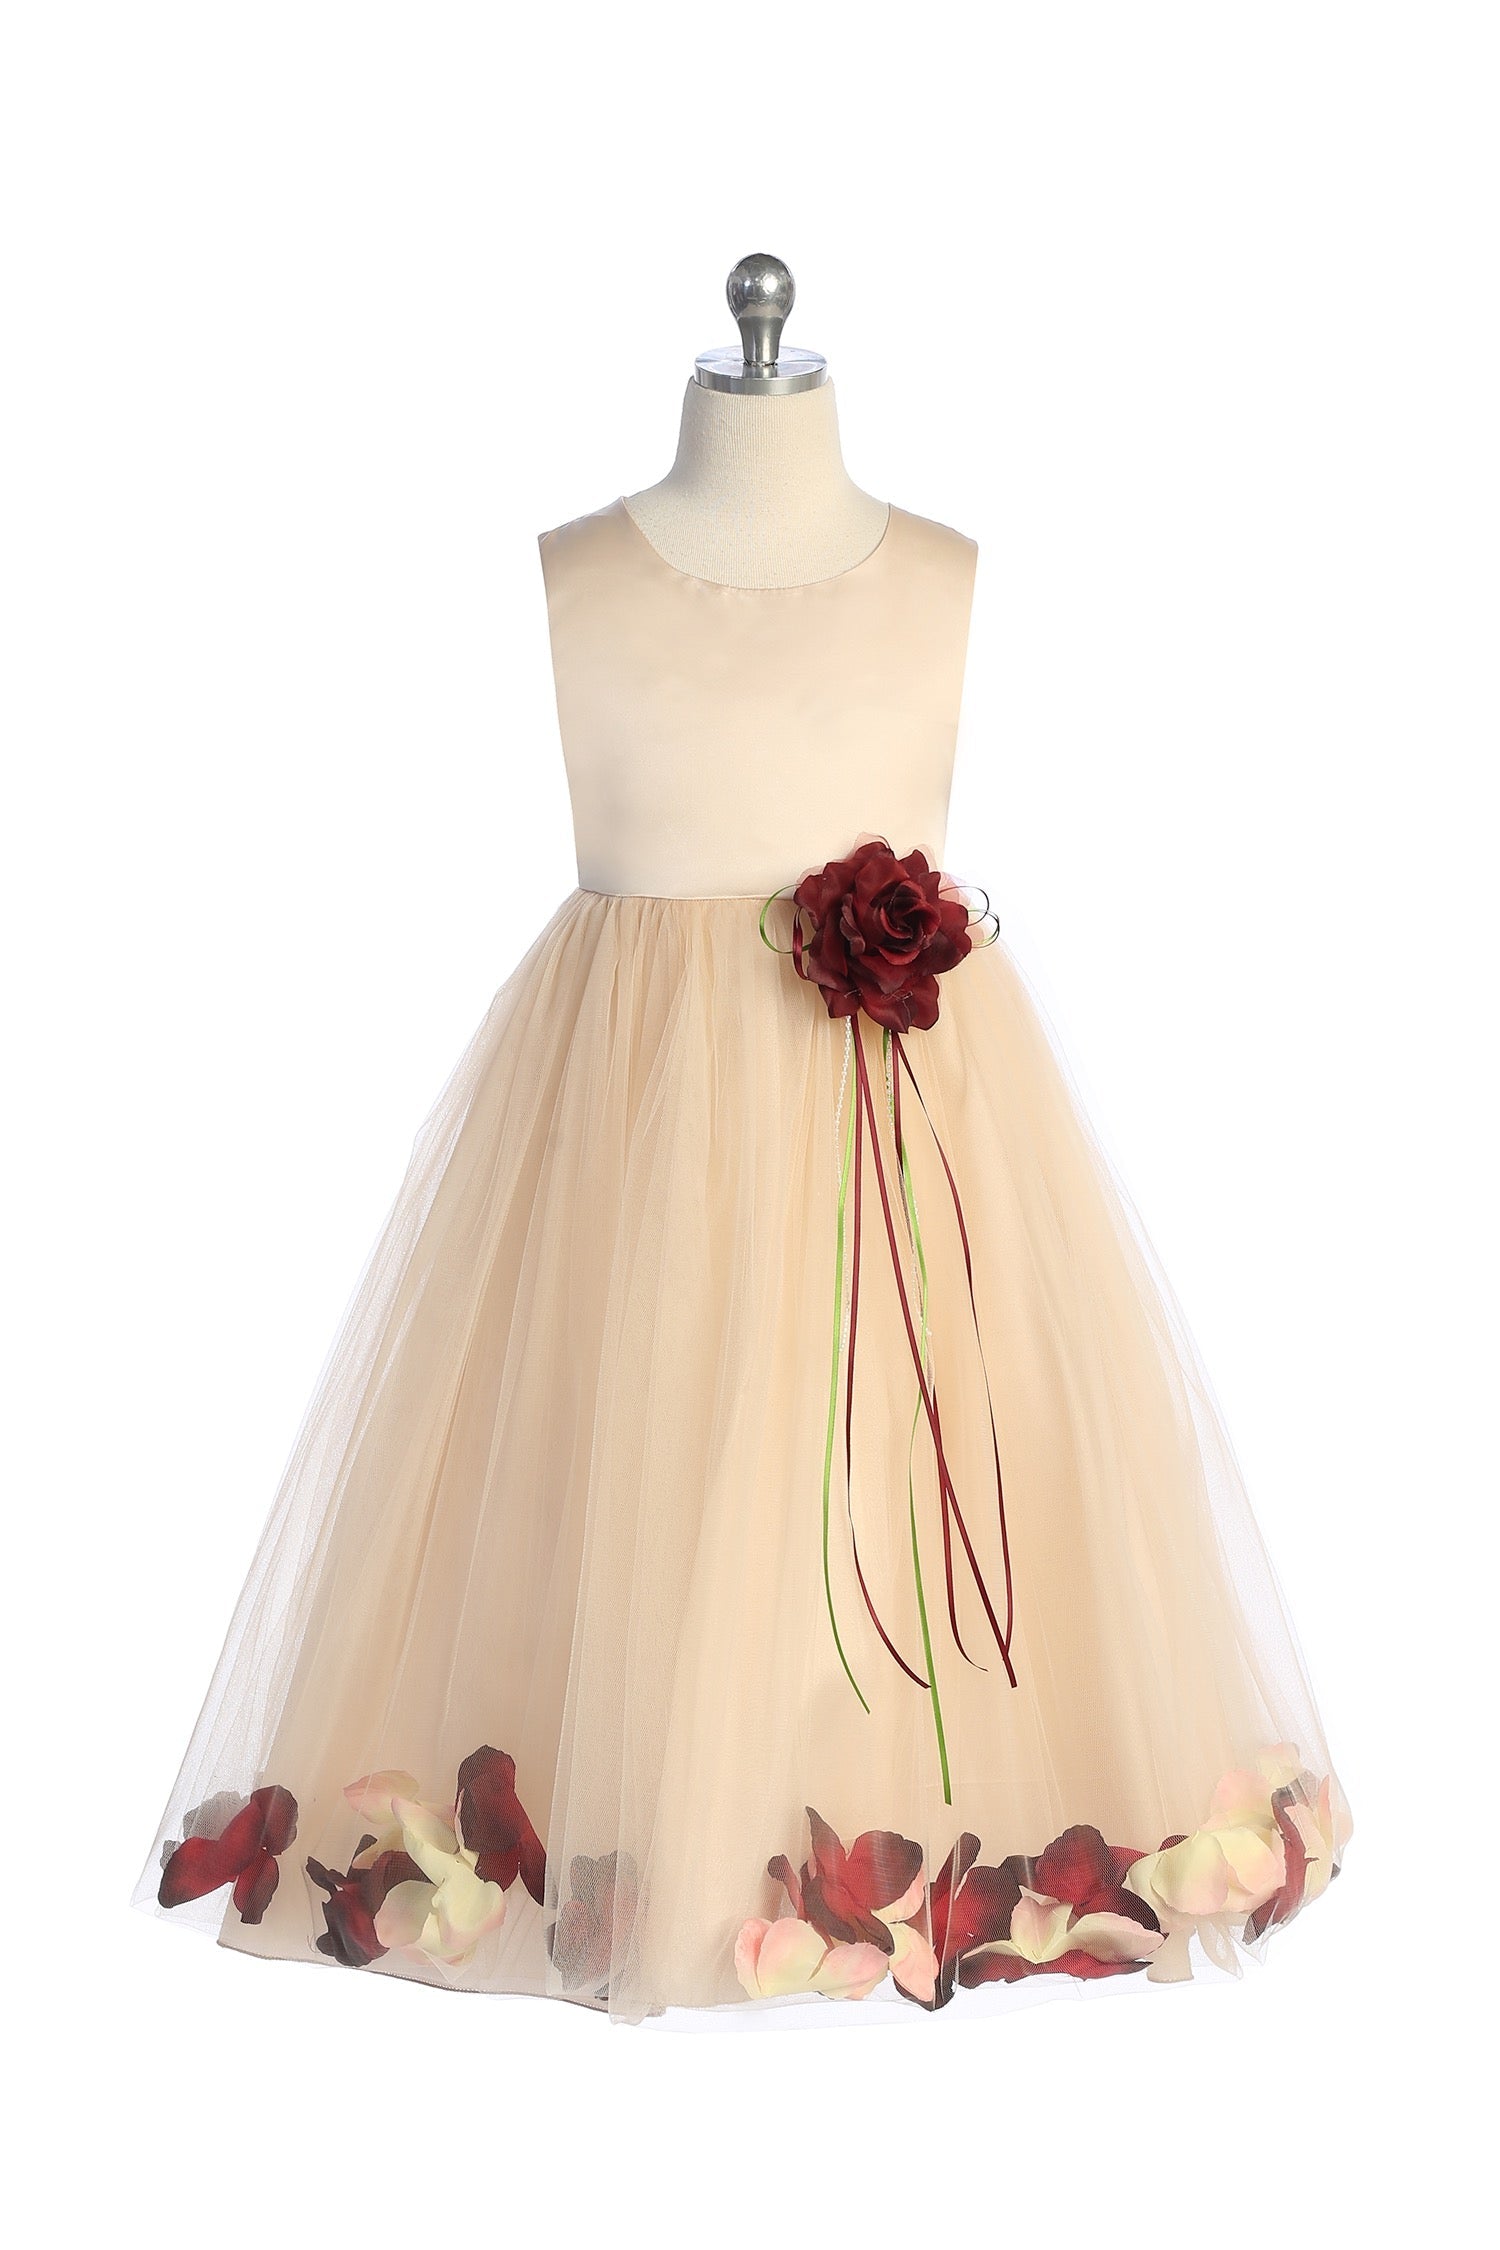 Girls Ivory Burgundy Bow Dress | Flower Girl Dress | Charles Class